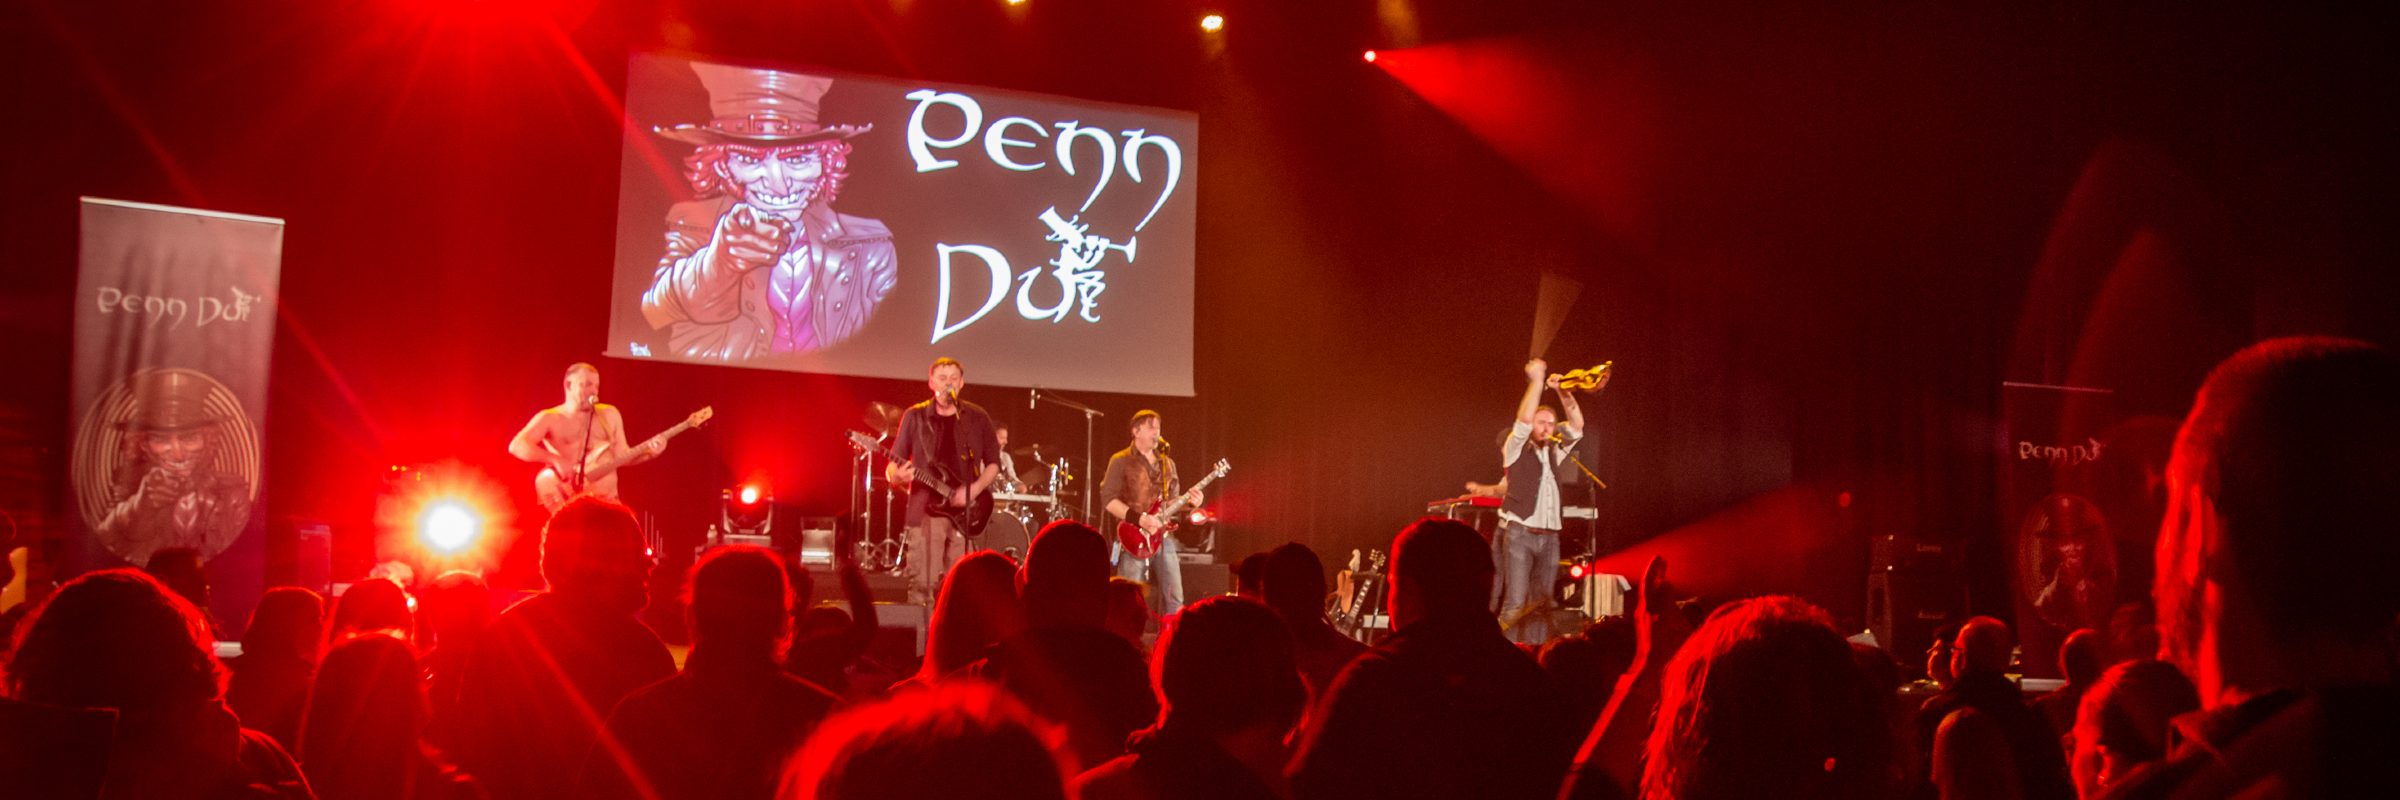 PENN DU, groupe de musique Rock en représentation à Eure - photo de couverture n° 3